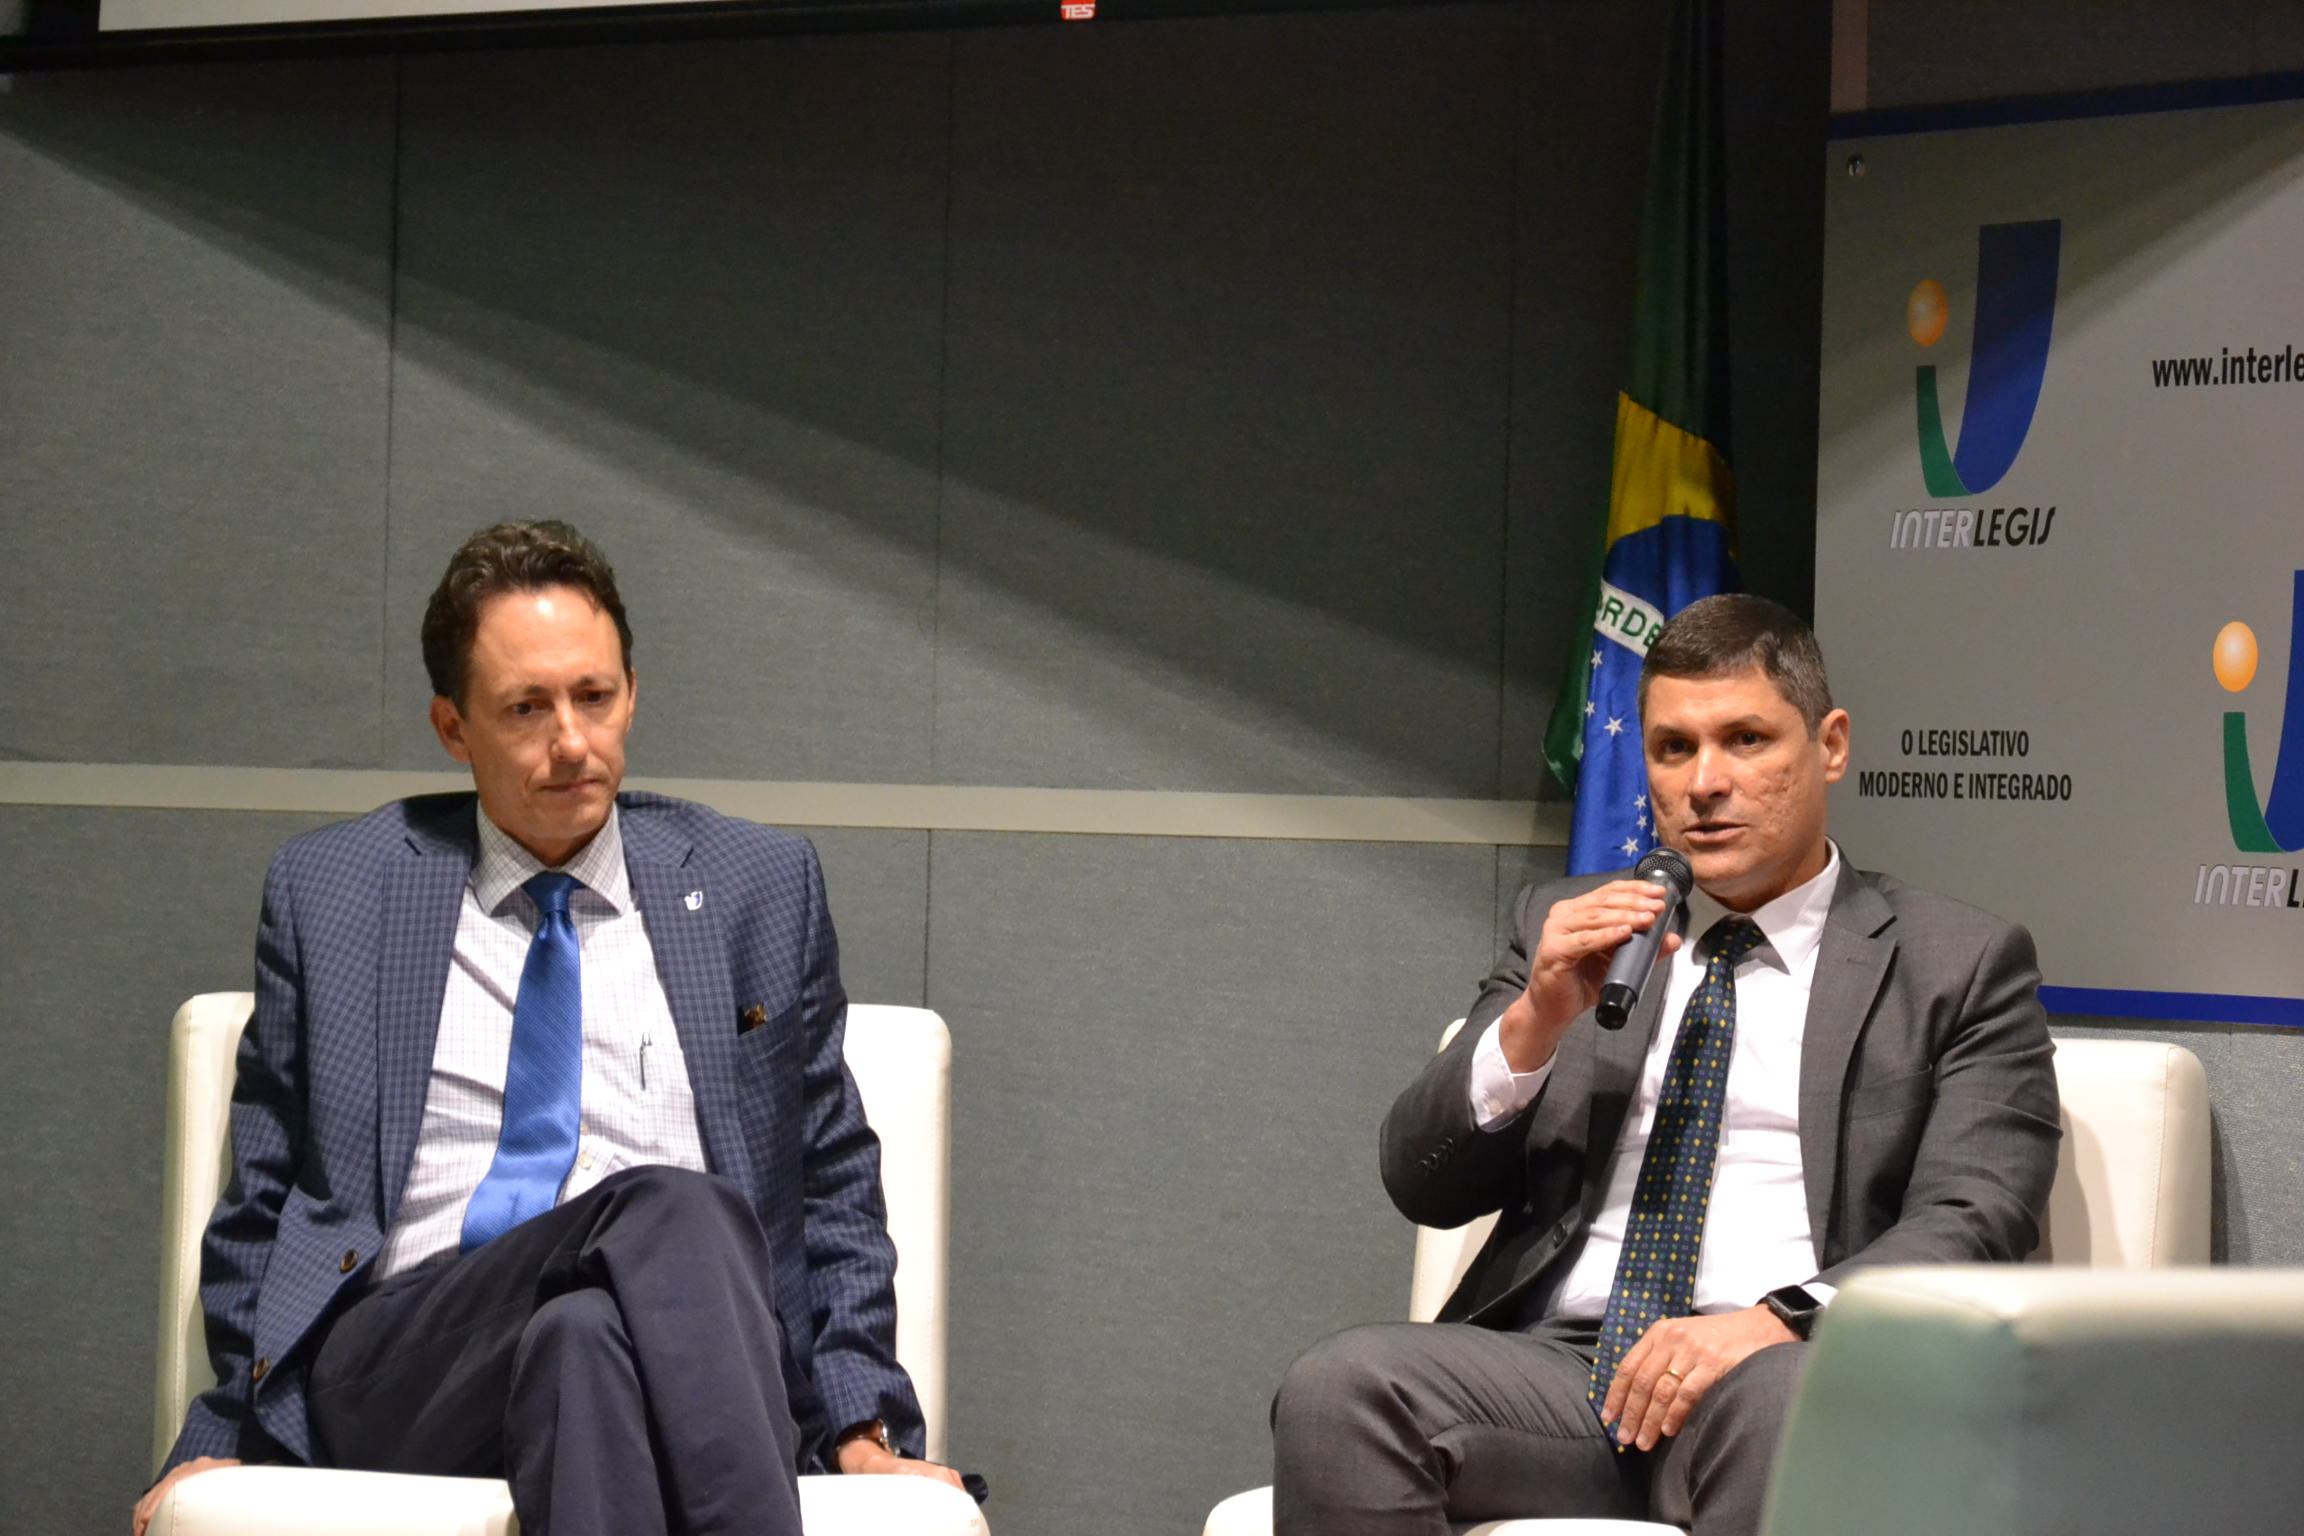 Seminário Internacional - Logística no contexto das Relações Institucionais, Governamentais e Internacionais. Oportunidades de Investimentos para o Brasil.